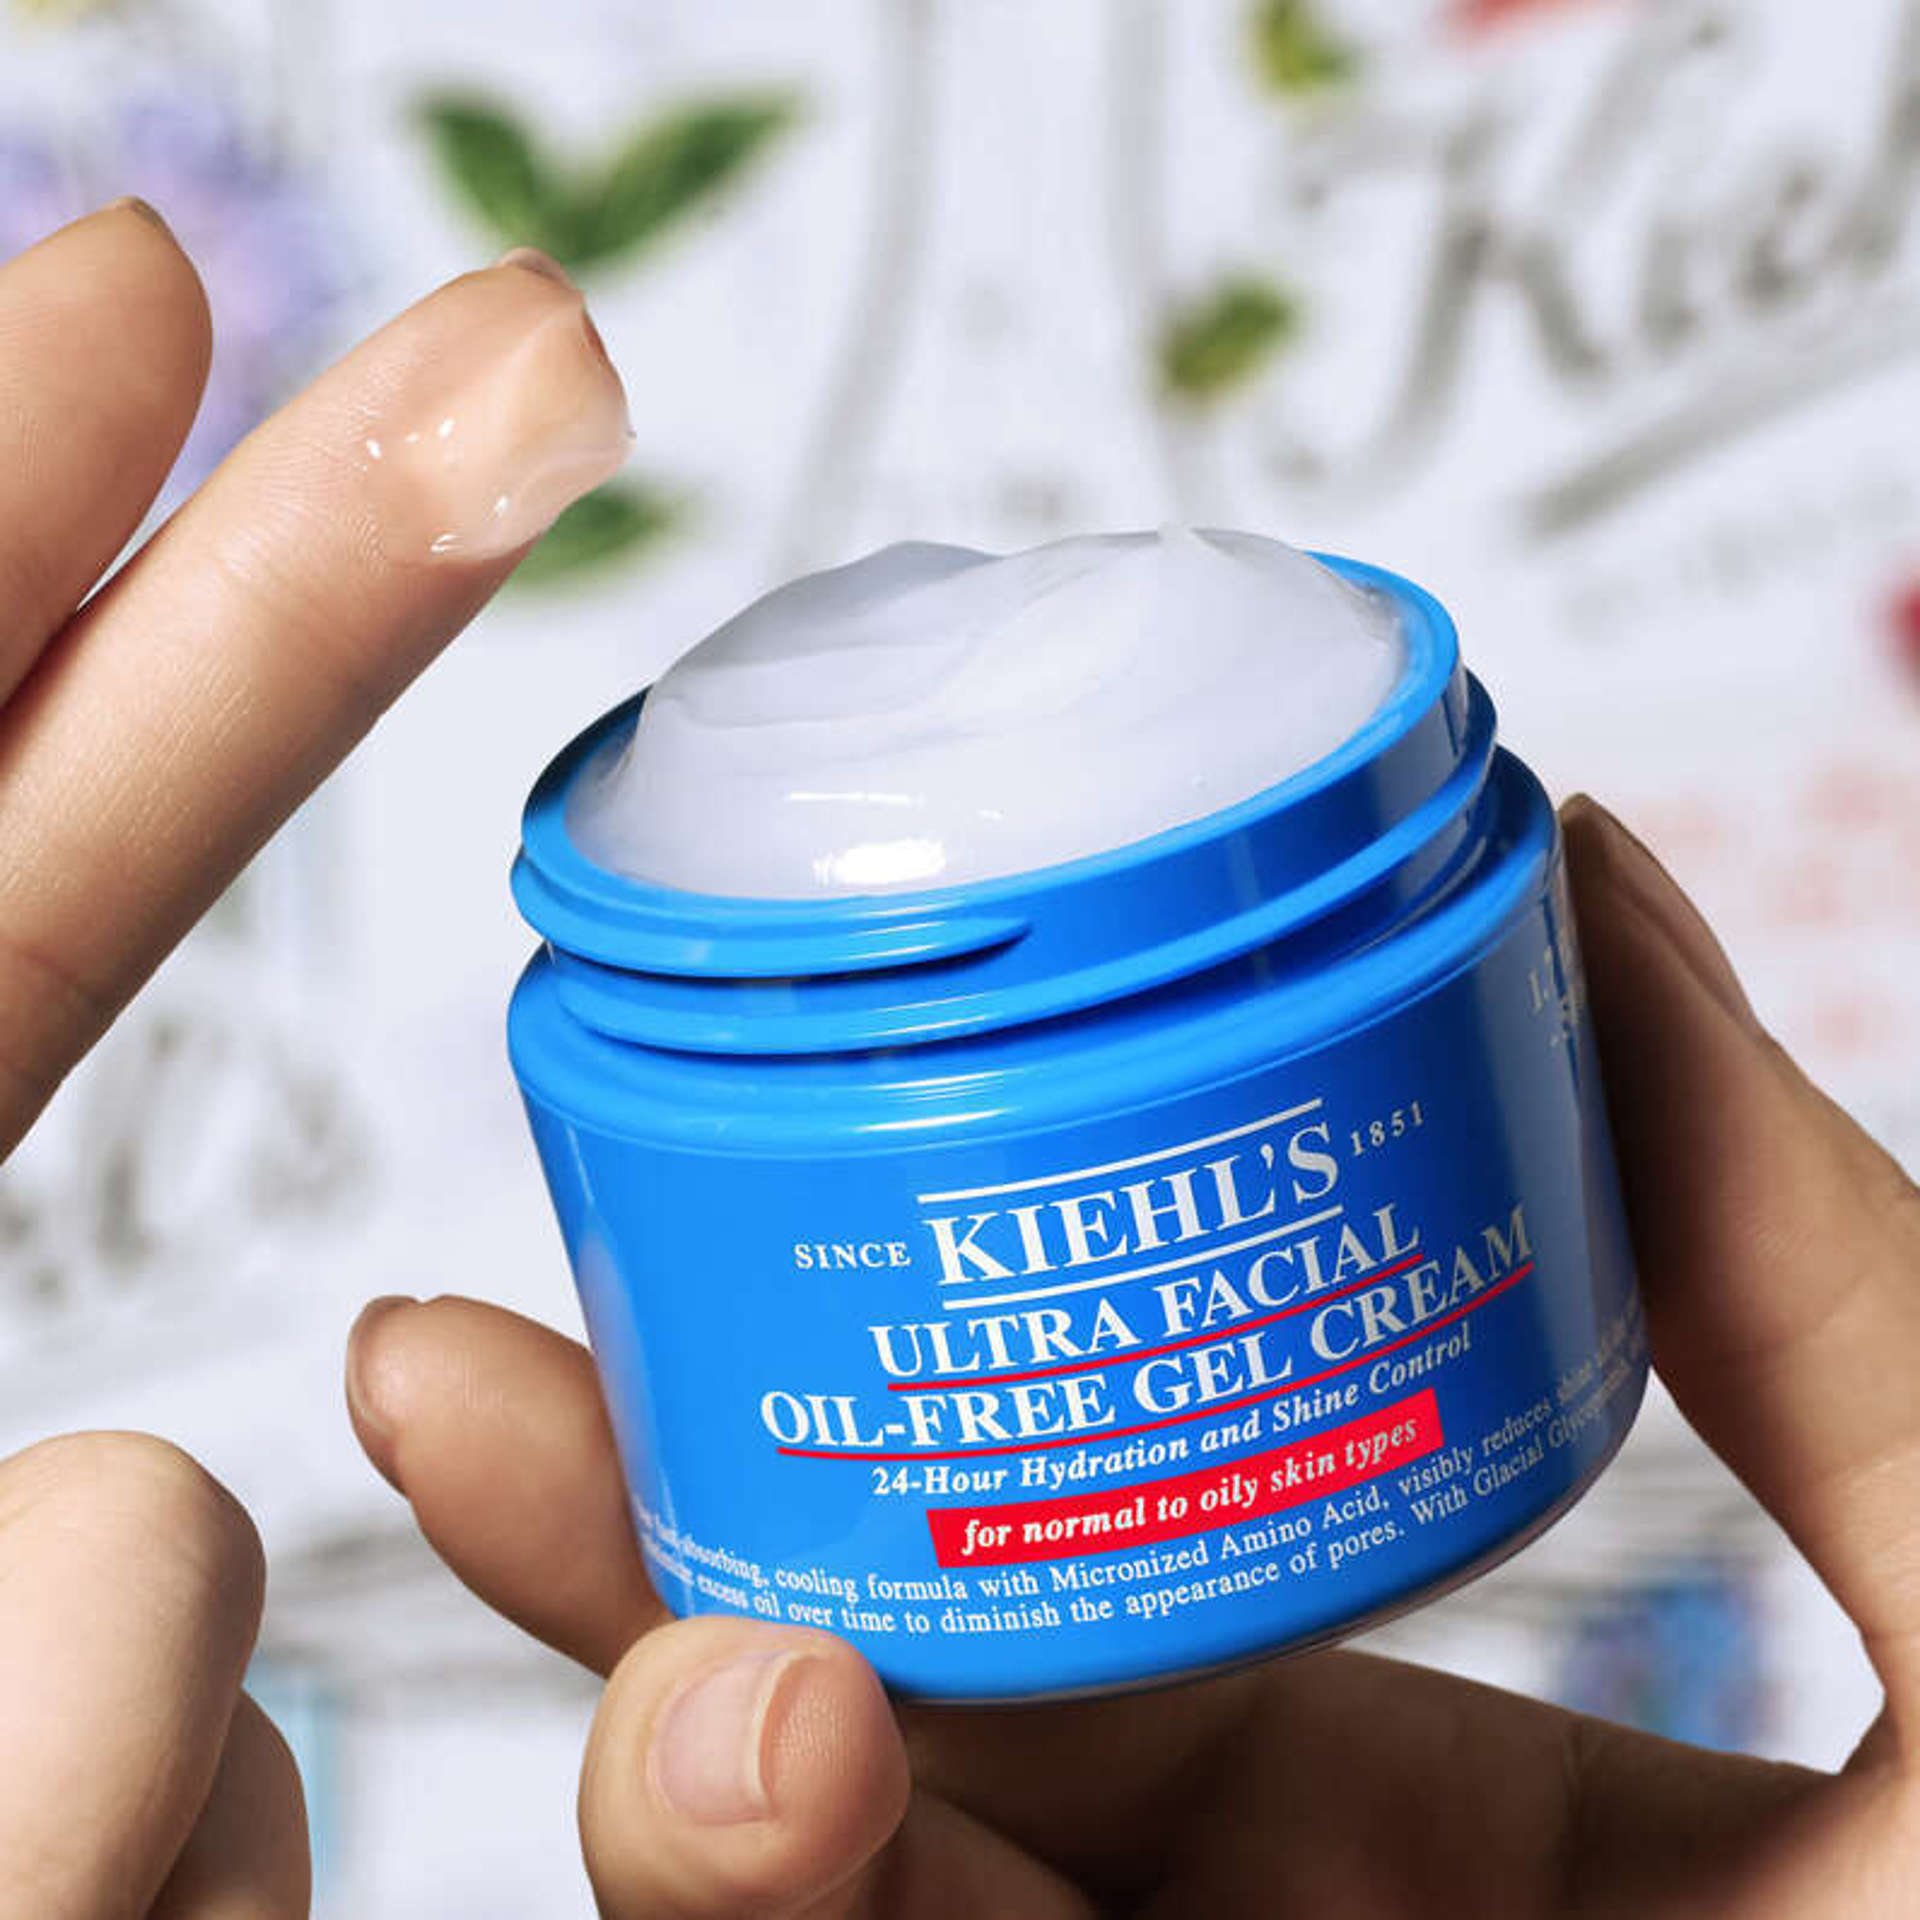 3. Kieh's Ultra Facial Oil-Free Gel Cream